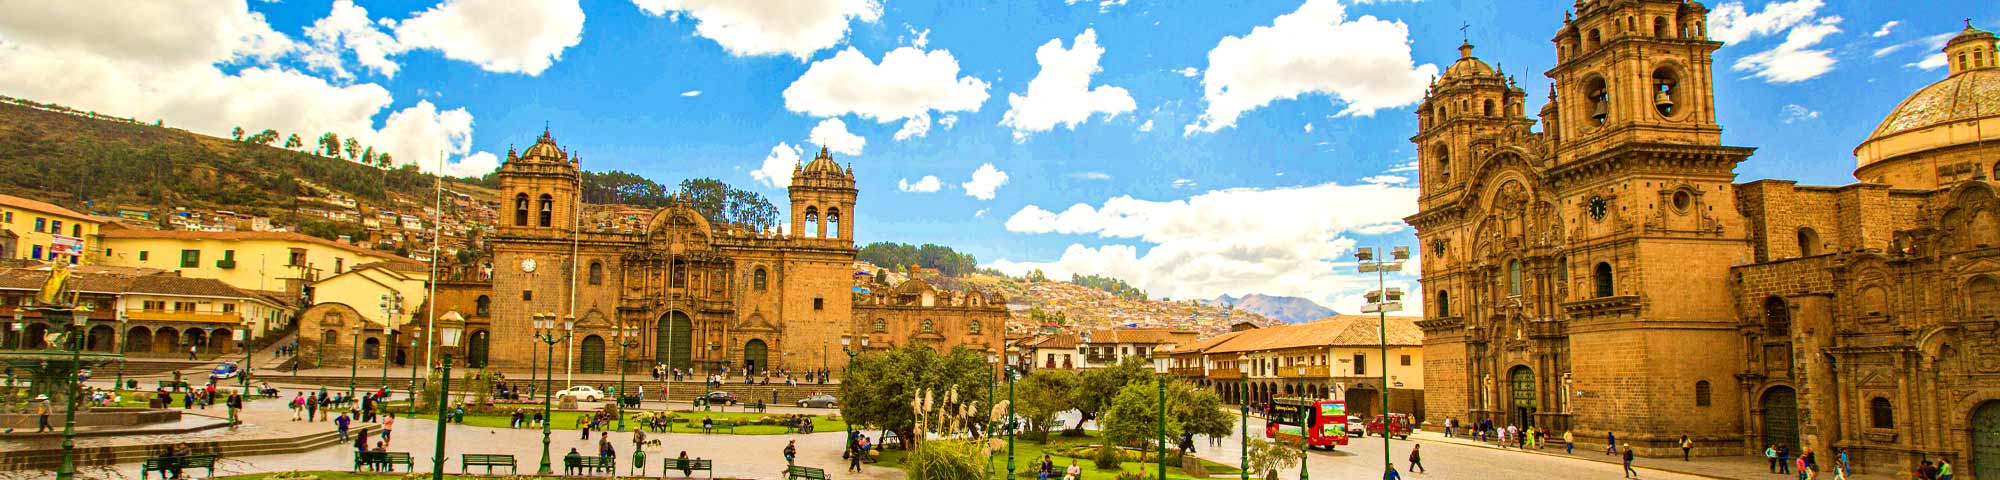 La ocupabilidad de hoteles en Cusco llegaría al 40% en los próximos días